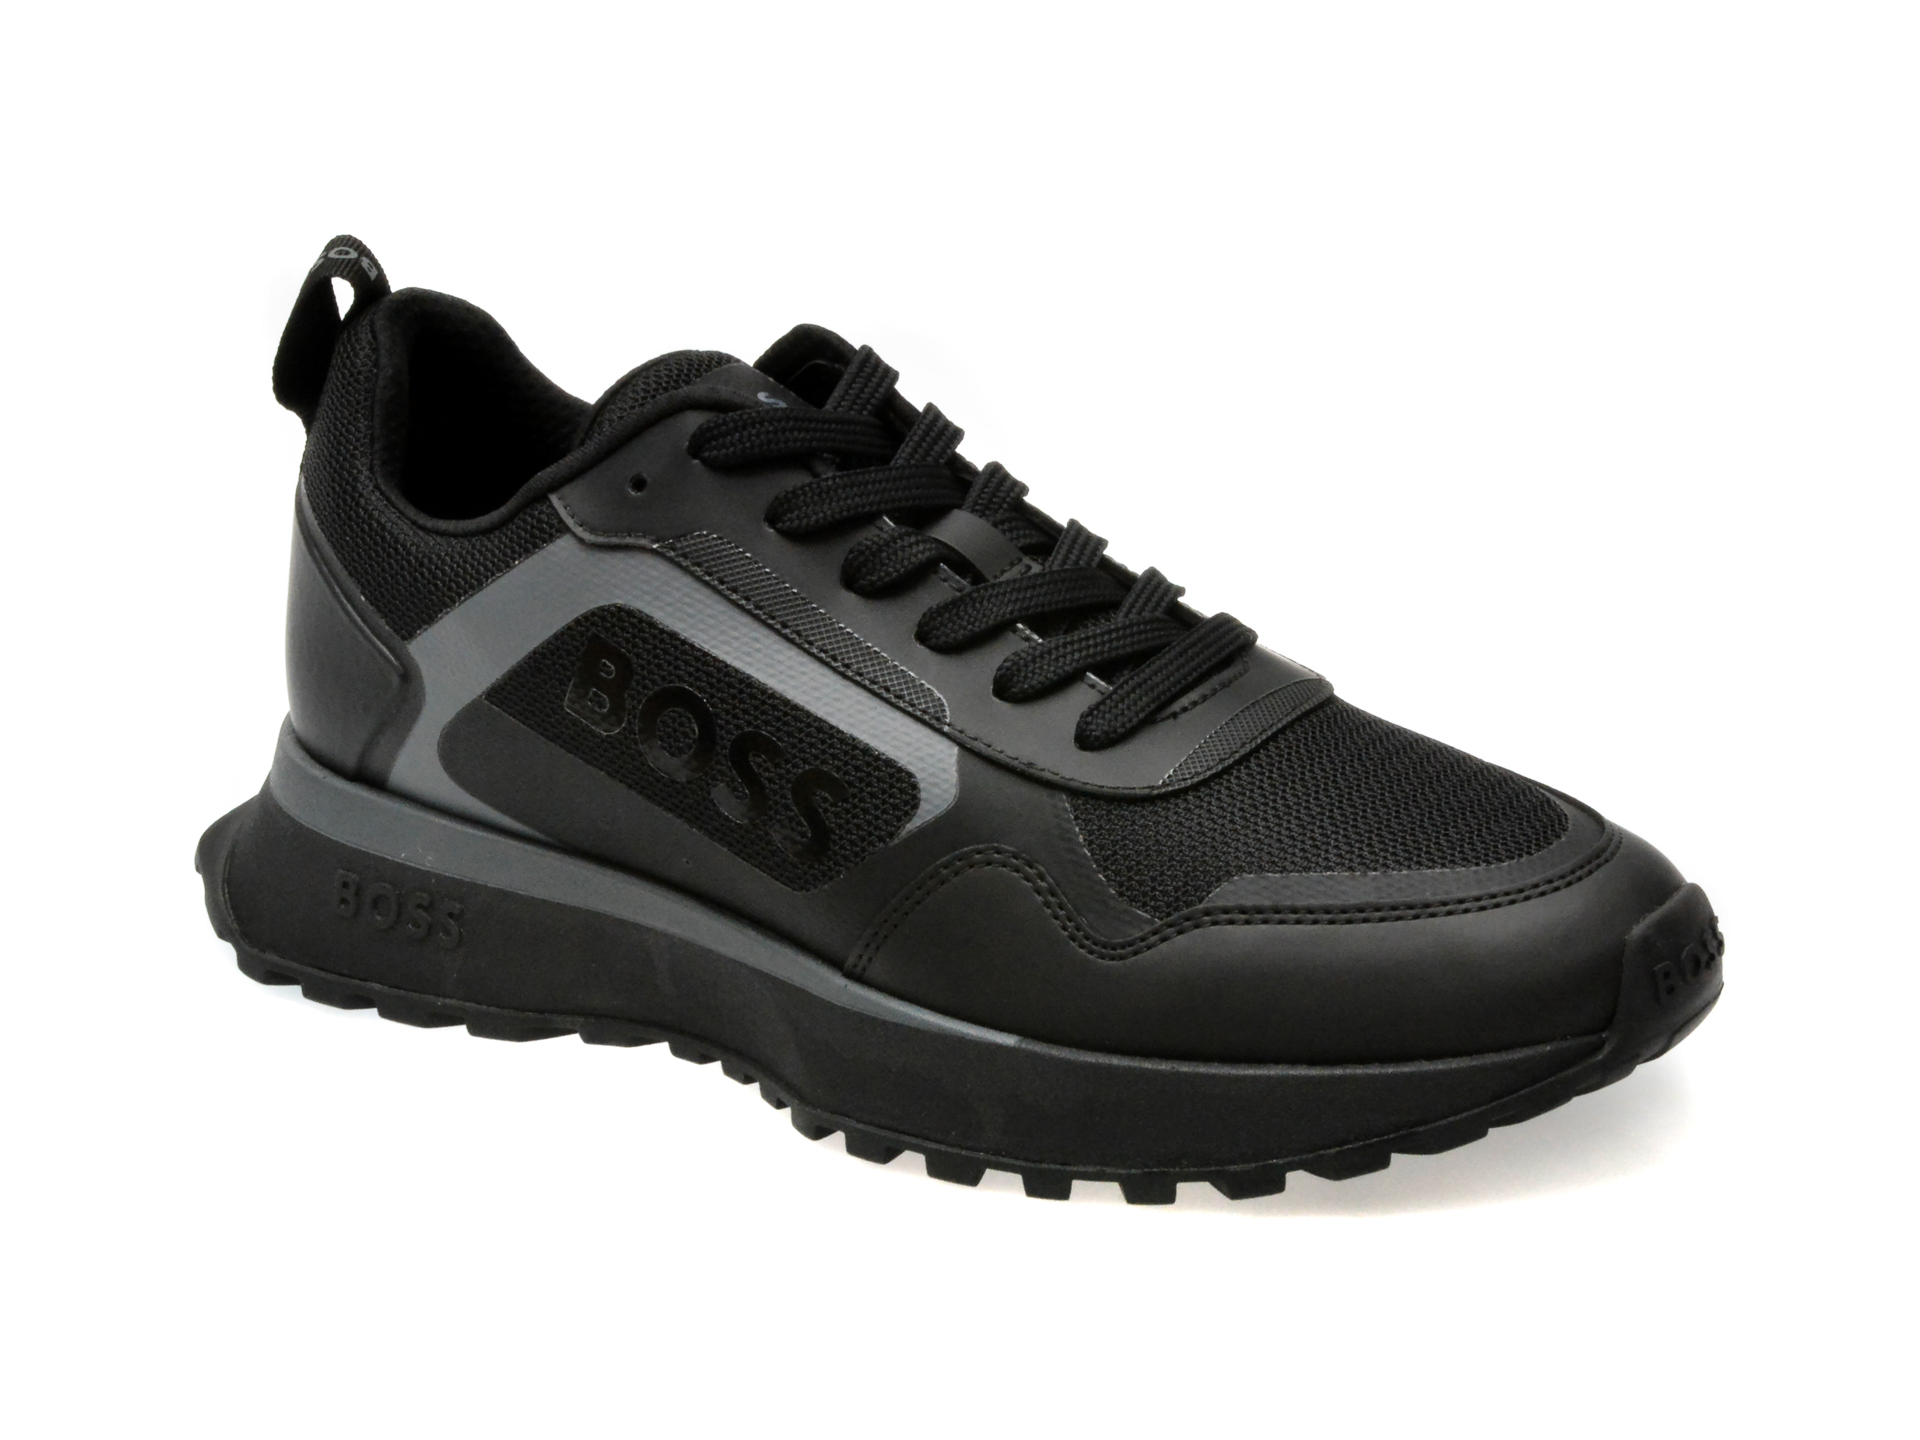 Pantofi sport BOSS negri, 730011, din piele ecologica